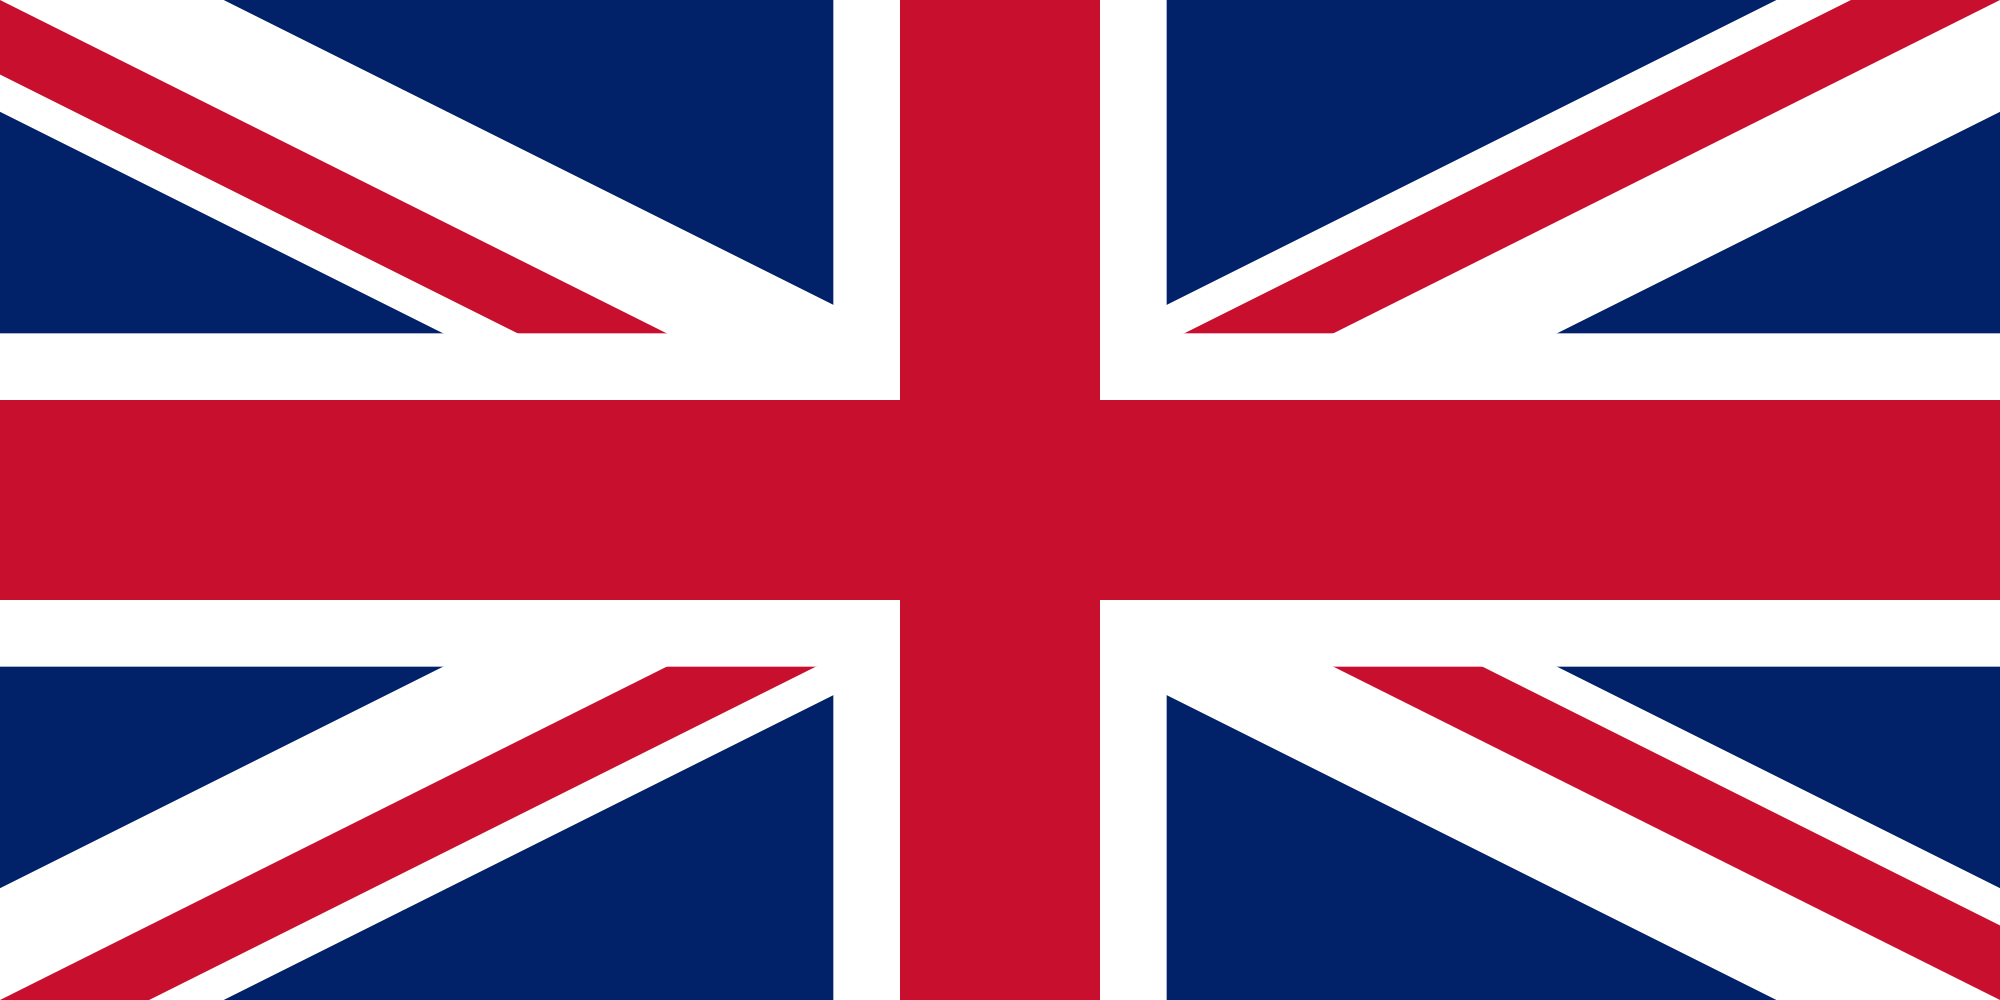 Wielka Brytania i Irlandia Północna